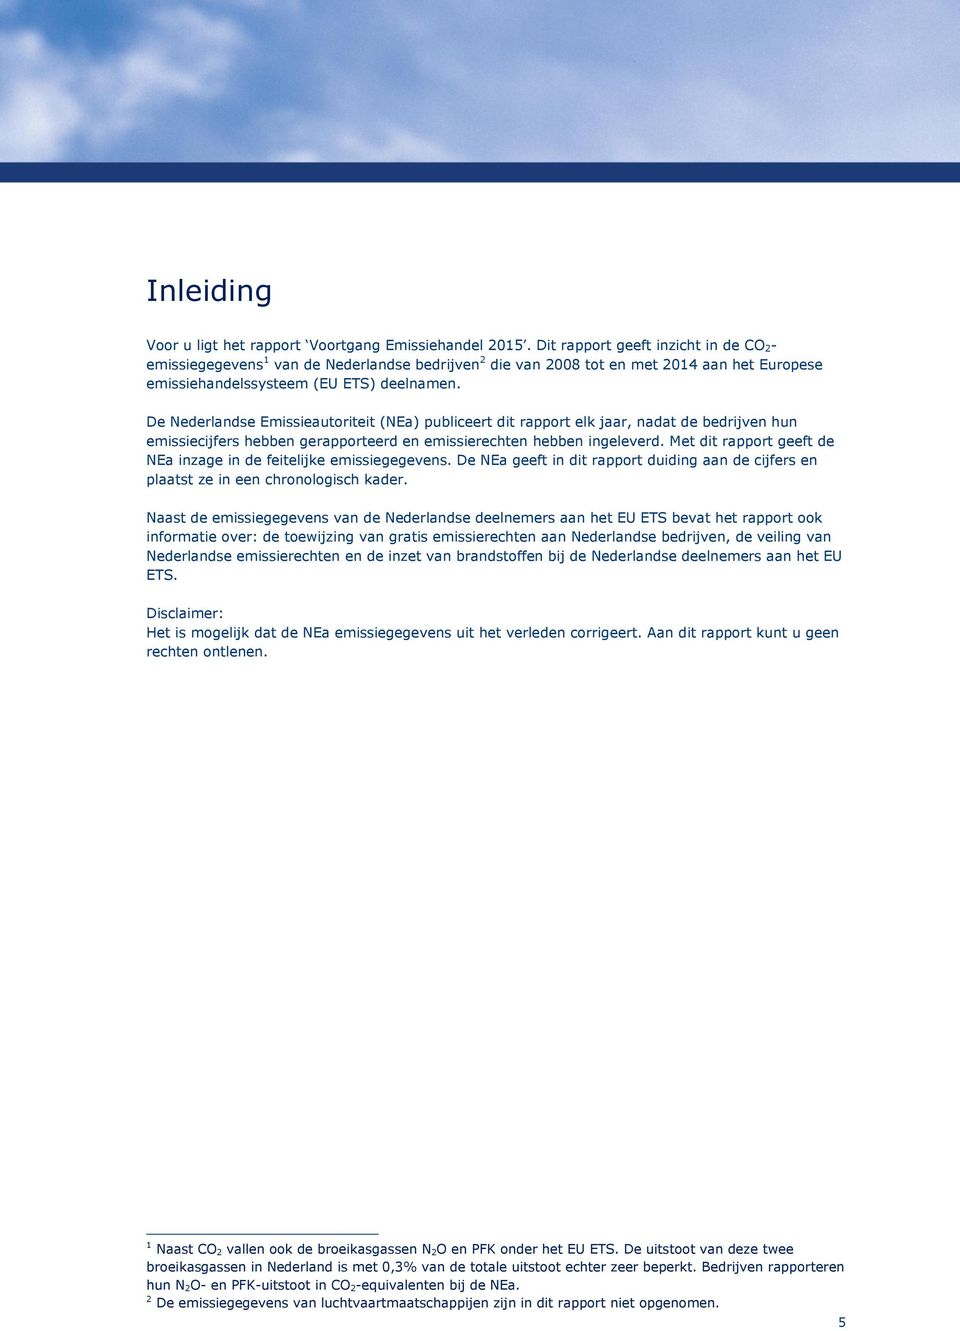 De Nederlandse Emissieautoriteit (NEa) publiceert dit rapport elk jaar, nadat de bedrijven hun emissiecijfers hebben gerapporteerd en emissierechten hebben ingeleverd.